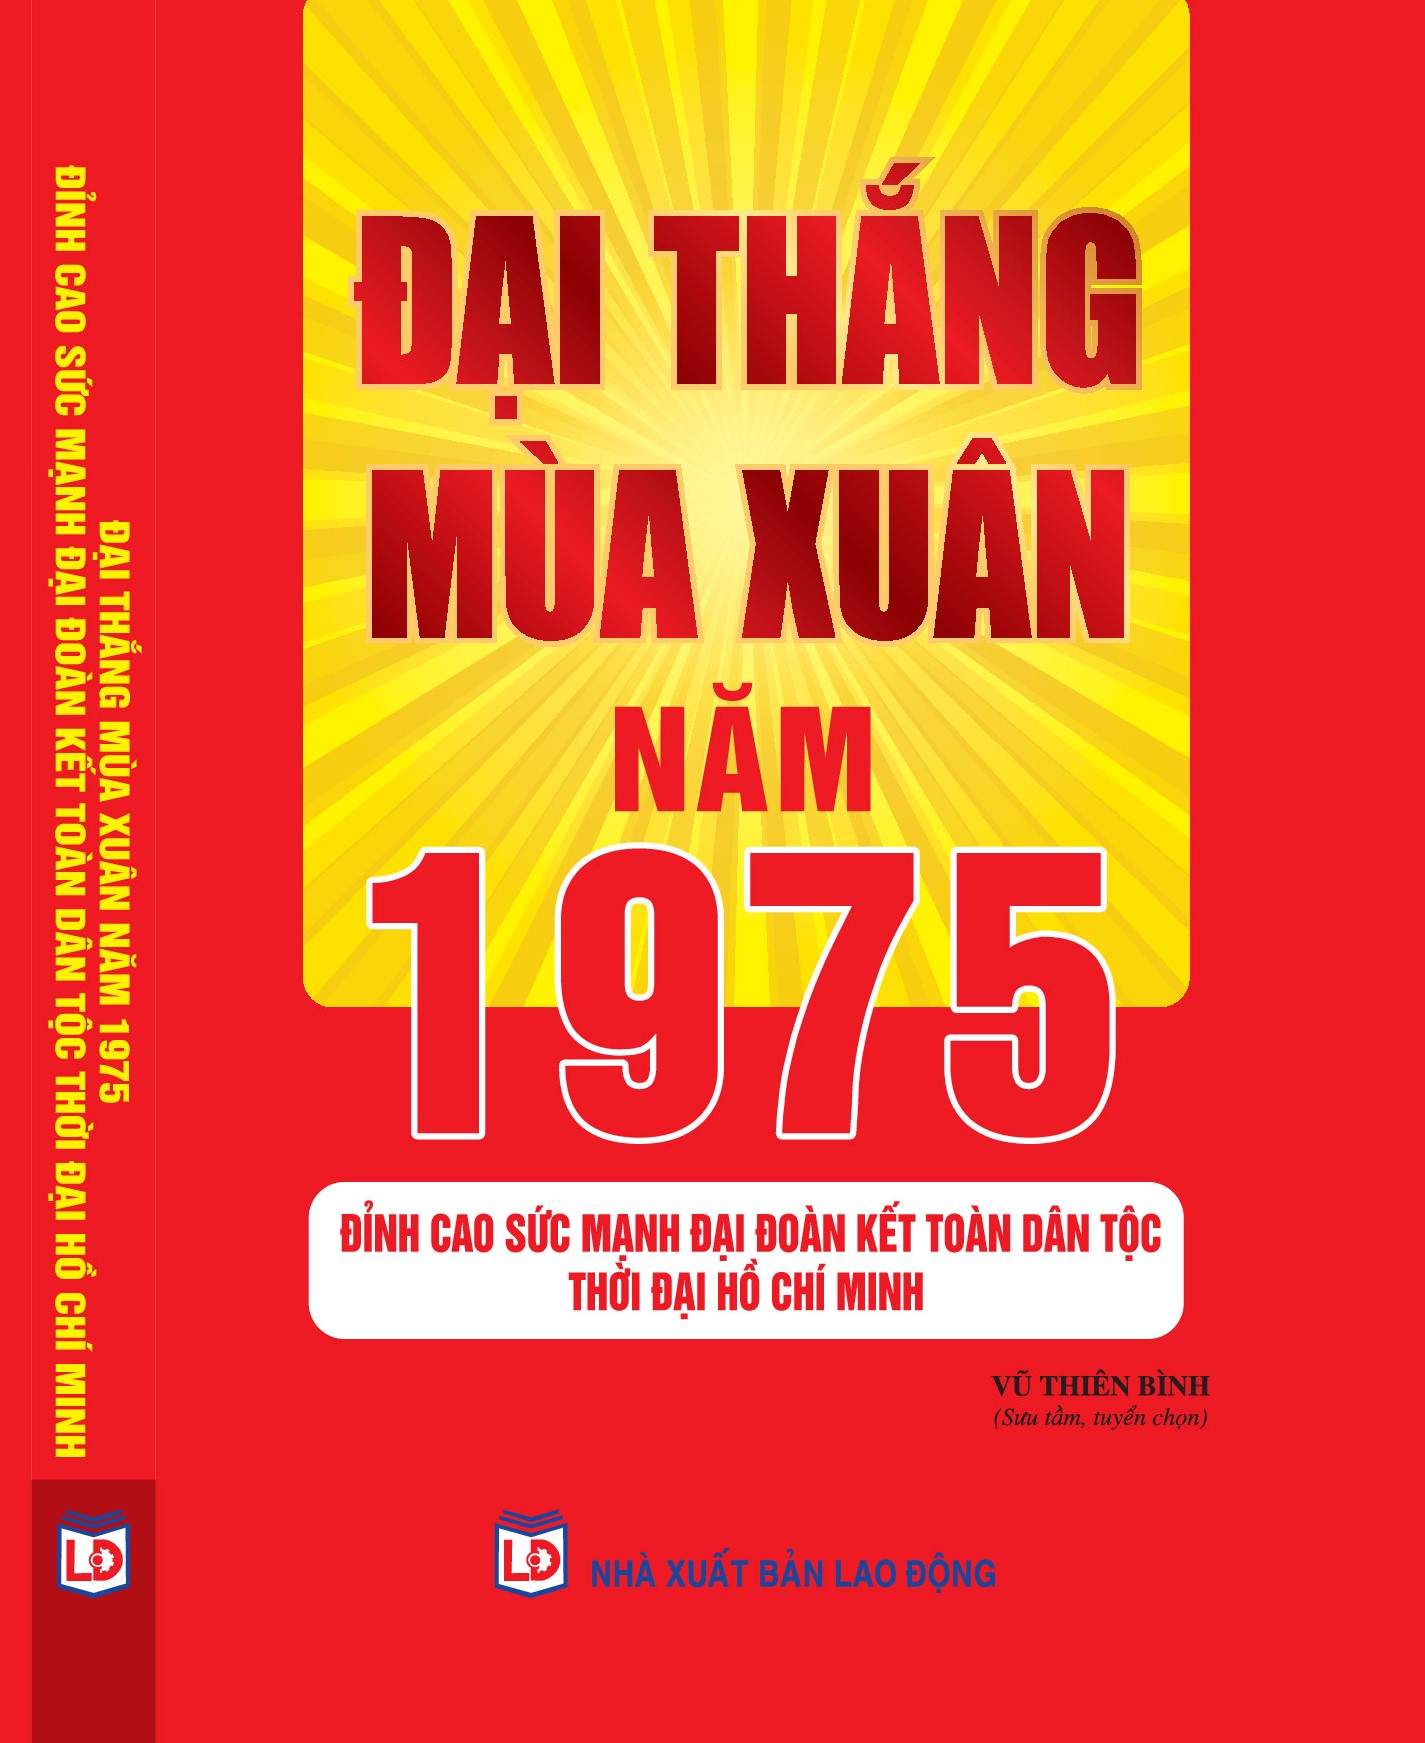 Đại thắng mùa Xuân năm 1975 – Đỉnh cao sức mạnh đại đoàn kết toàn dân tộc thời đại Hồ Chí Minh  